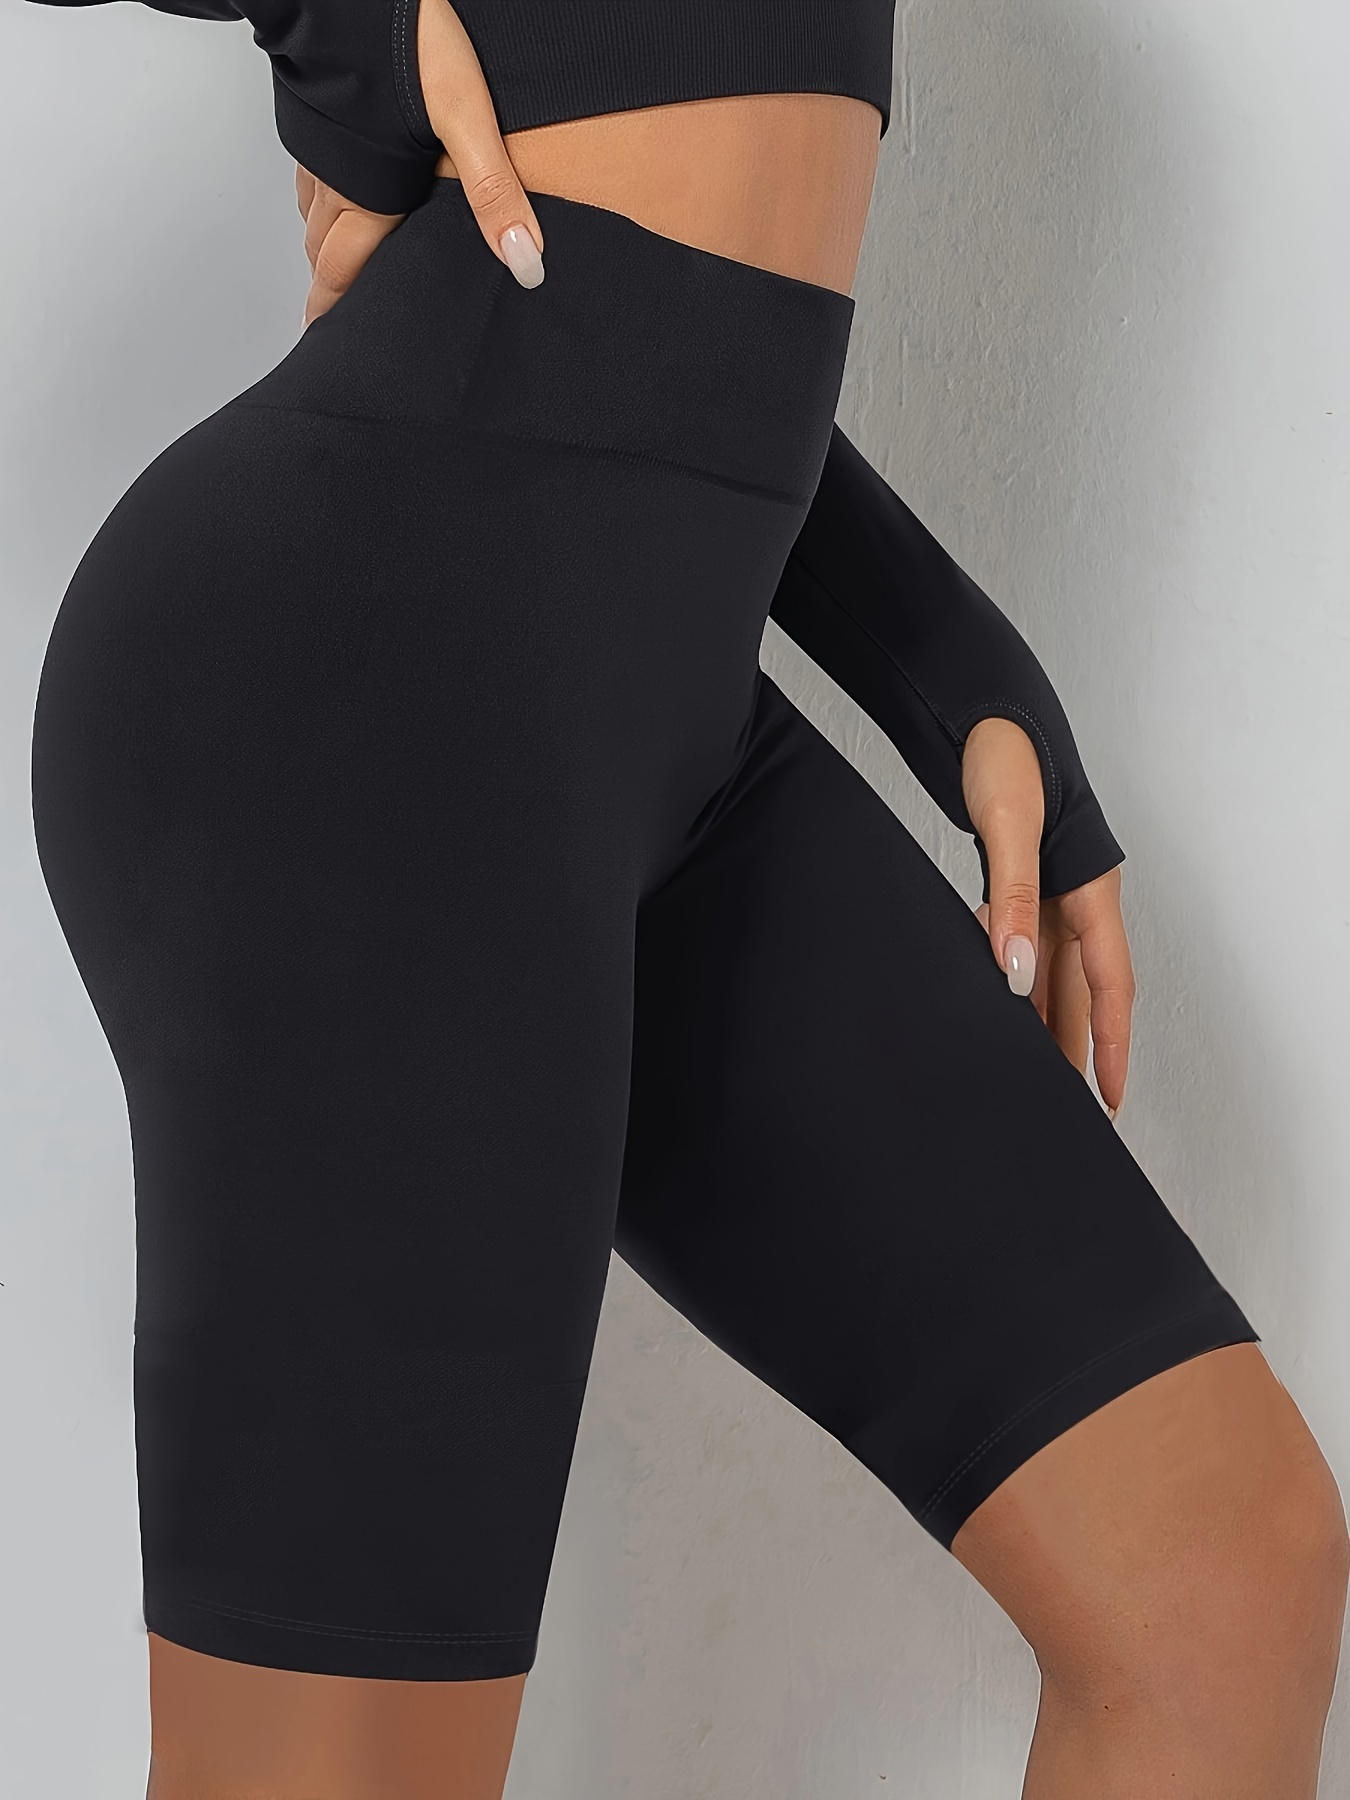 Fashion Solid Black Yoga Shorts Stretchy High Waist Scrunch - Temu